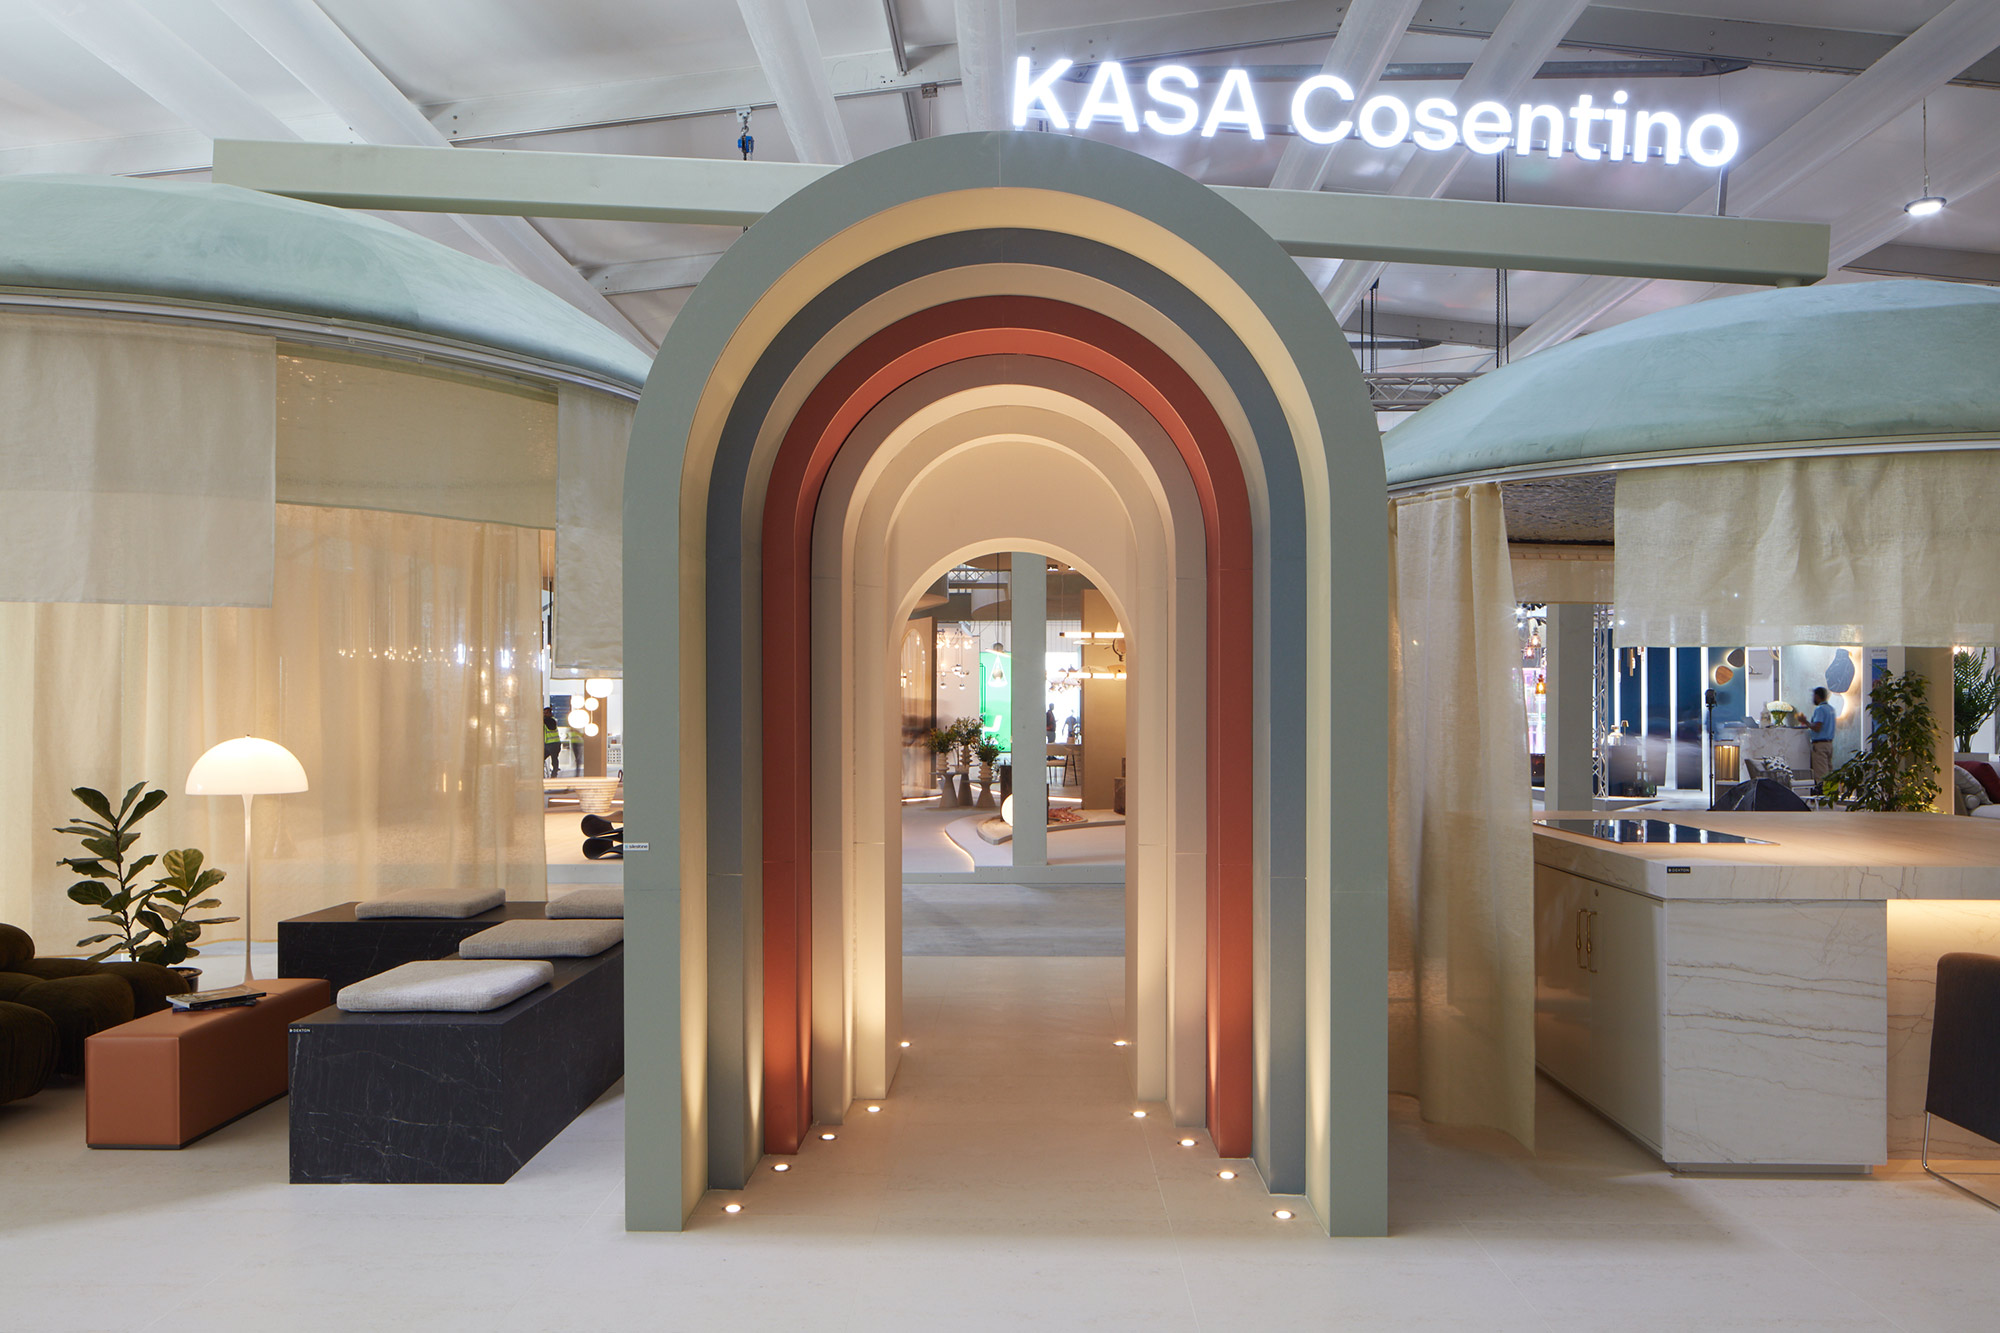 Image of Kasa Cosentino 3 in {{KASA Cosentino en la feria Downtown Design 2022 puso en valor el diseño responsable y la sostenibilidad}} - Cosentino